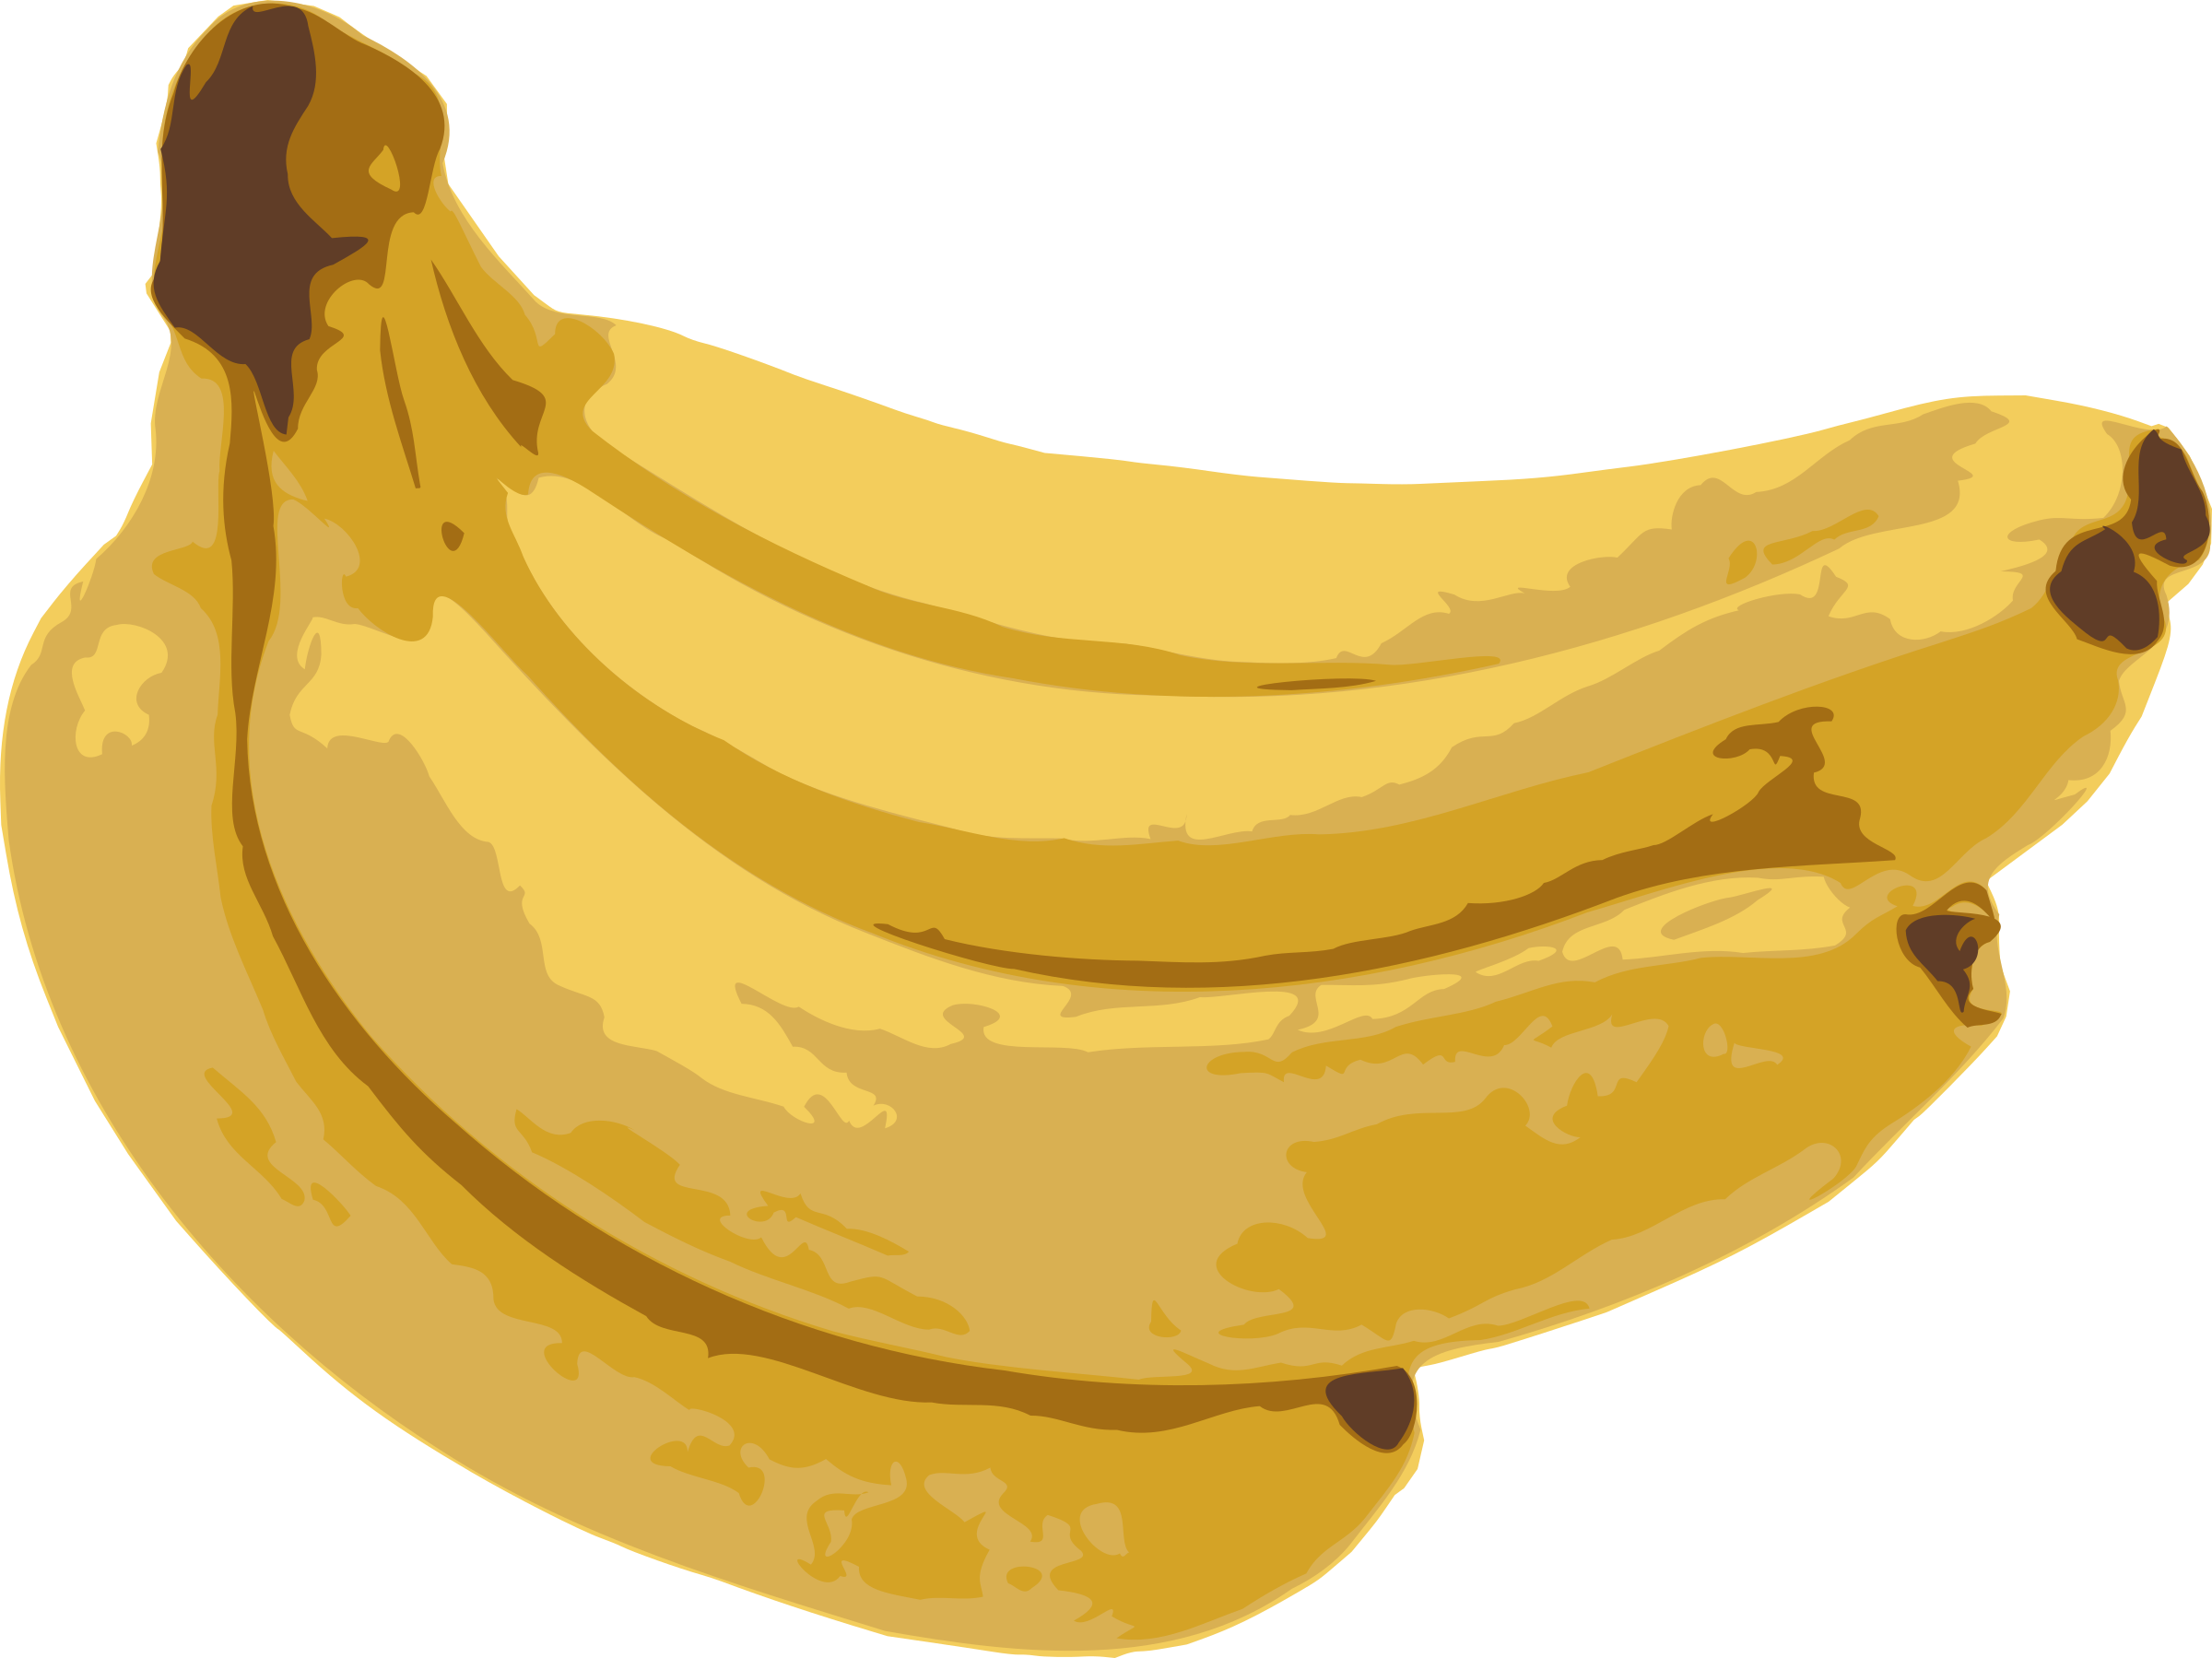 Clipart banana plantain. Bananas big image png